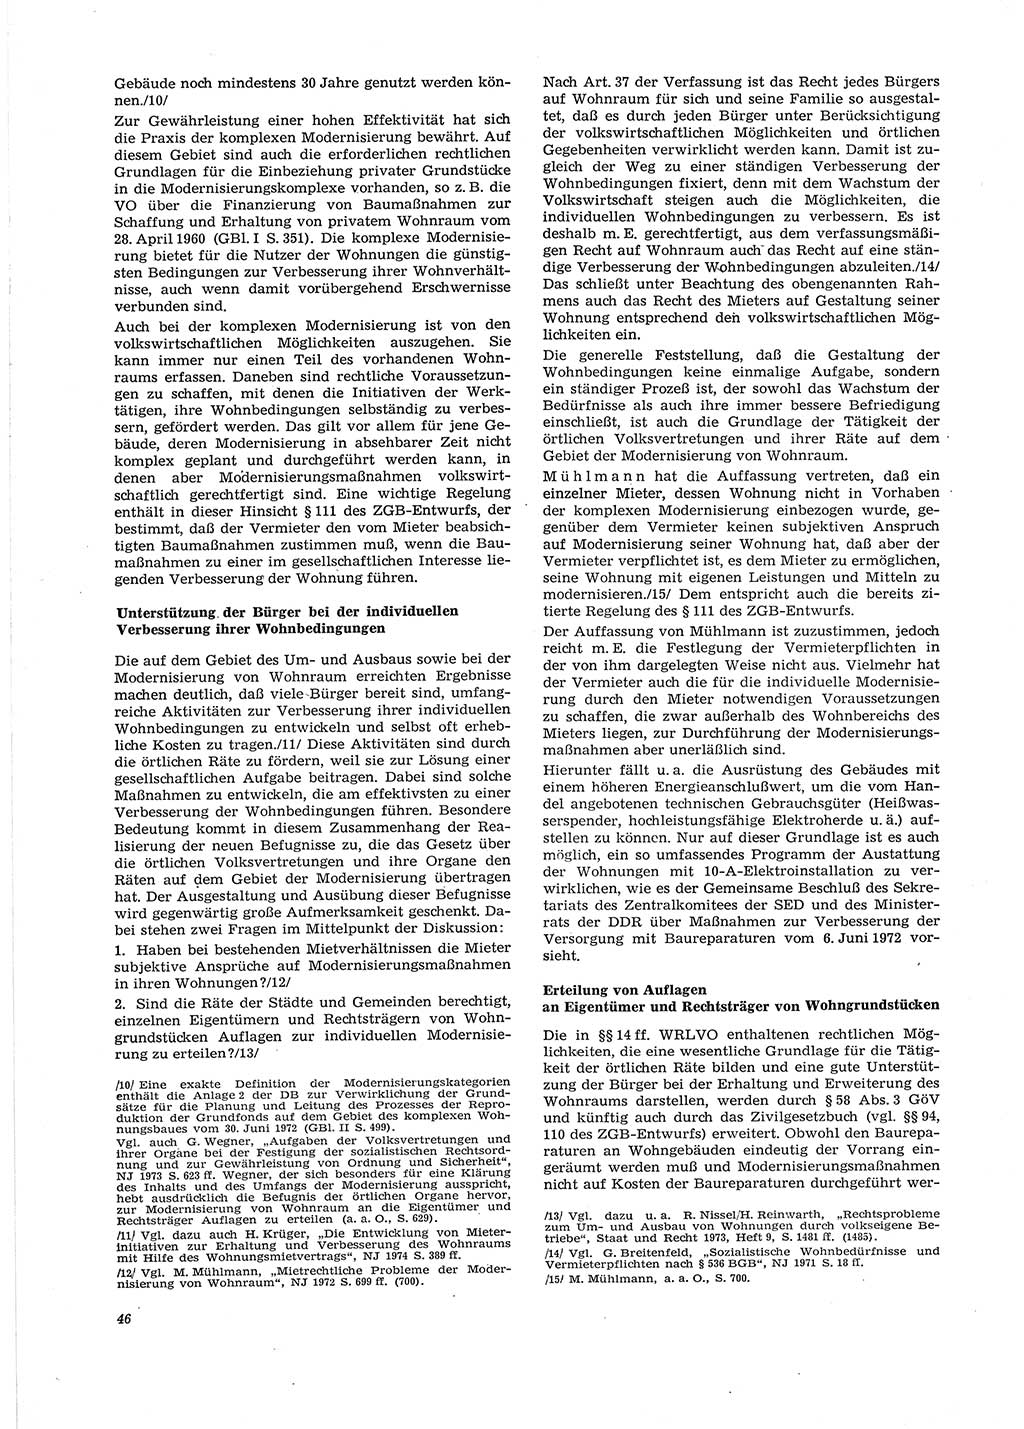 Neue Justiz (NJ), Zeitschrift für Recht und Rechtswissenschaft [Deutsche Demokratische Republik (DDR)], 29. Jahrgang 1975, Seite 46 (NJ DDR 1975, S. 46)